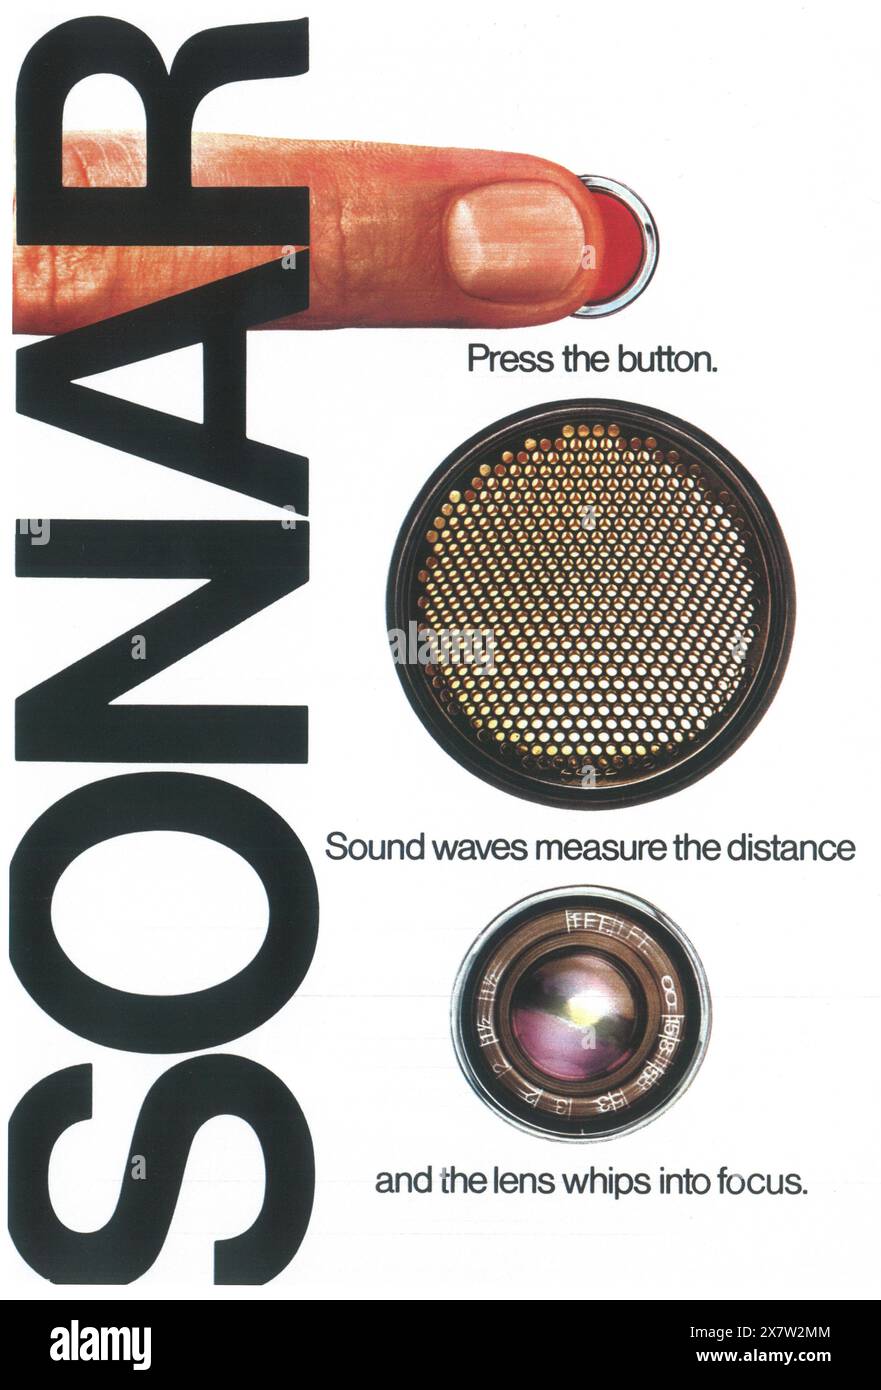 1978 annuncio per fotocamera Polaroid Sonar Foto Stock